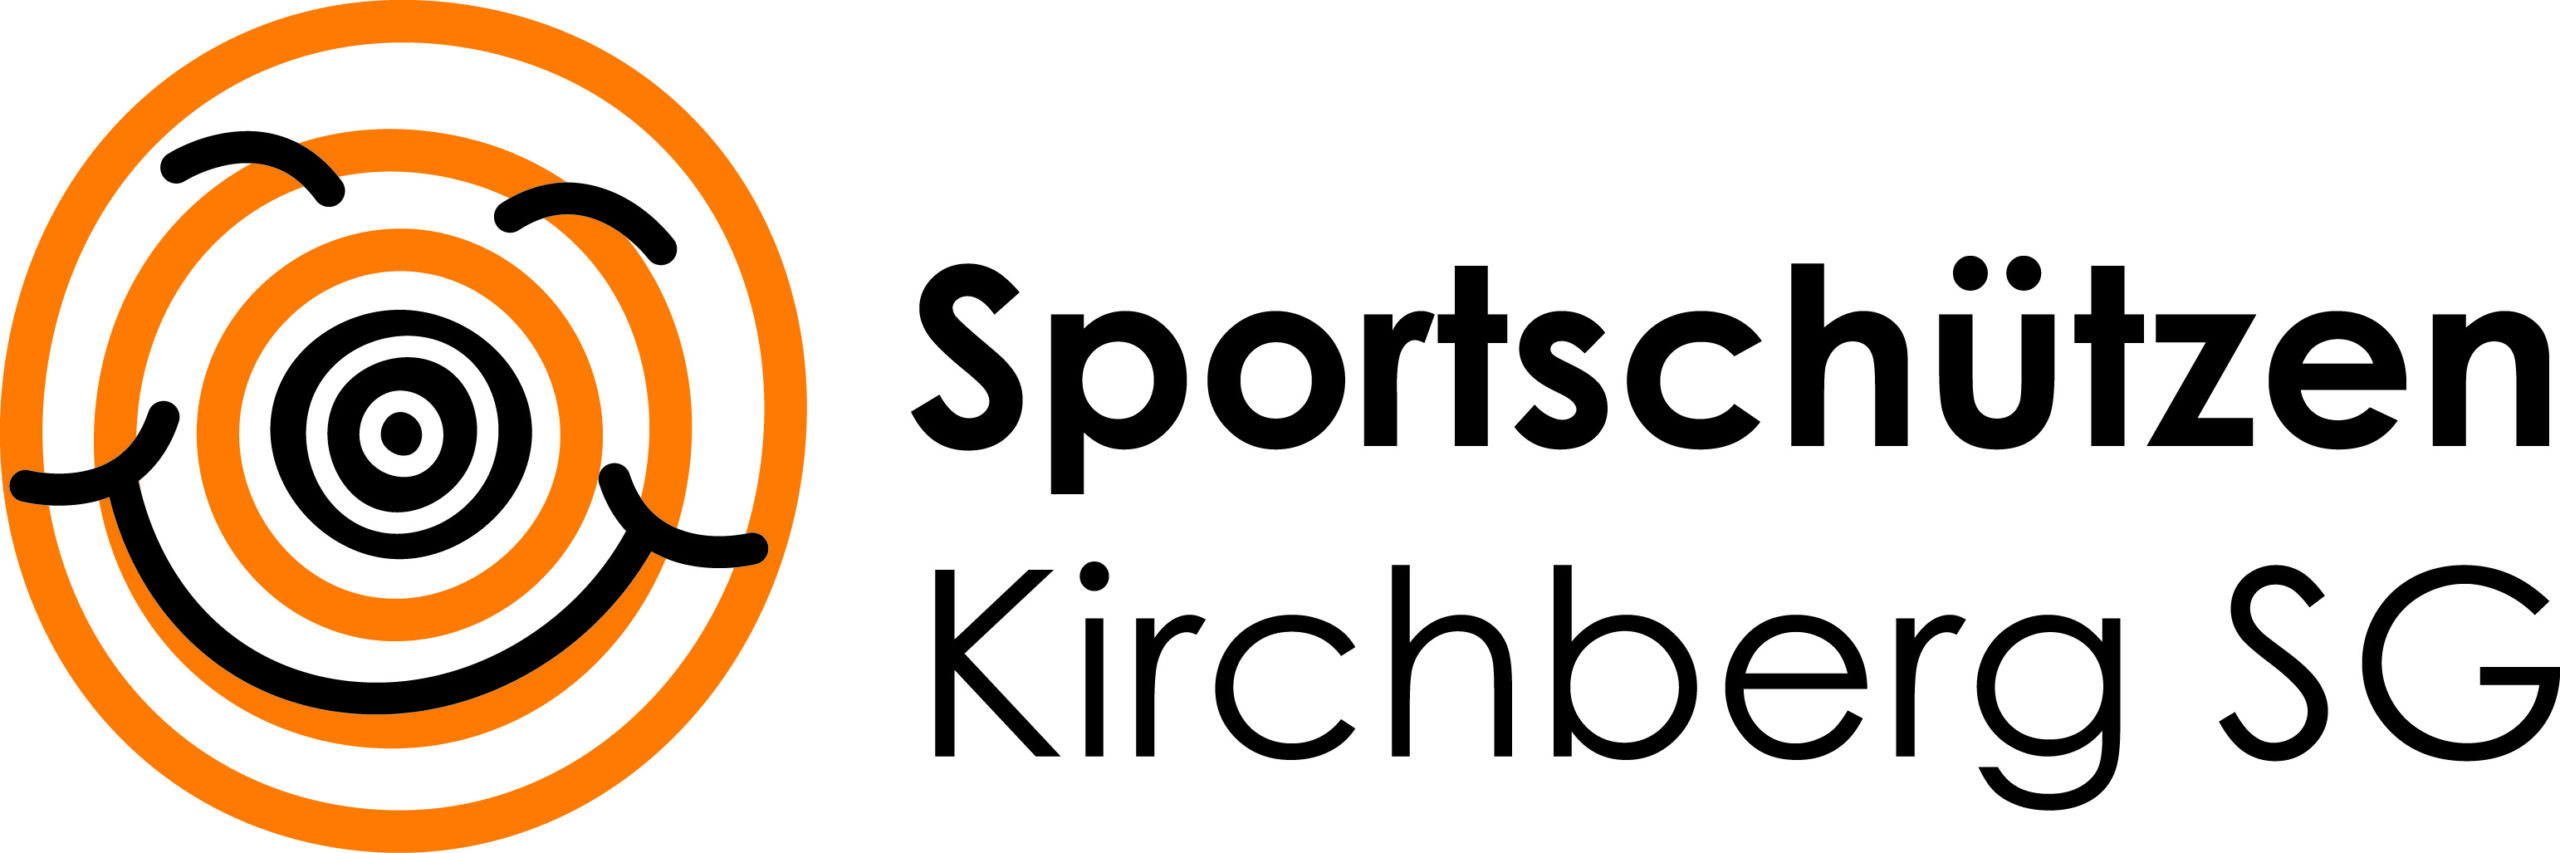 Sportschützen Kirchberg